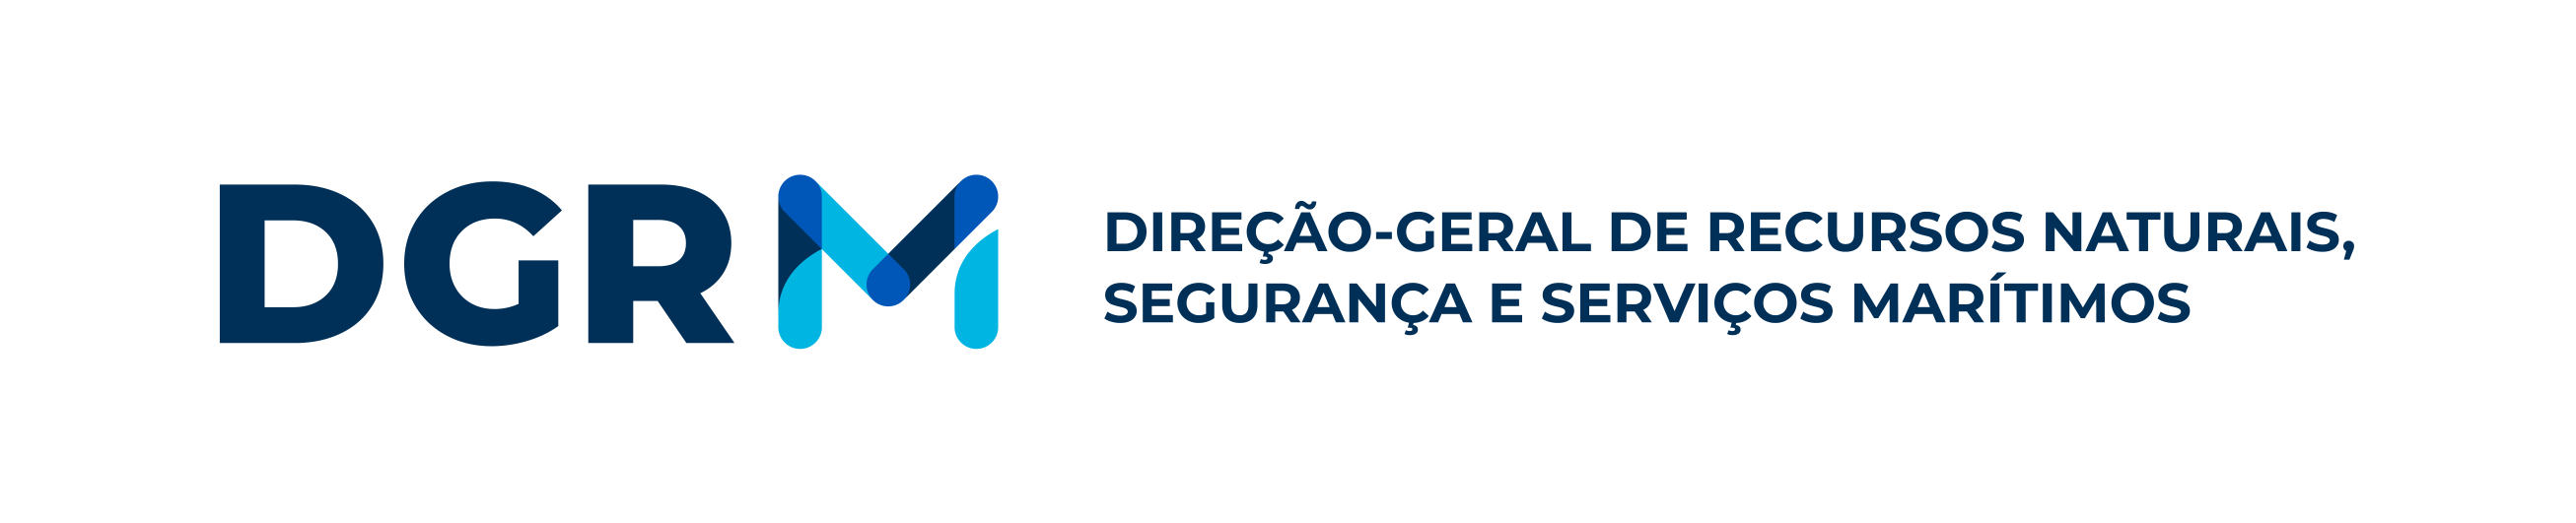 Logotipo da Direção-Geral de Recursos Naturais, Segurança e Serviços Marítimos